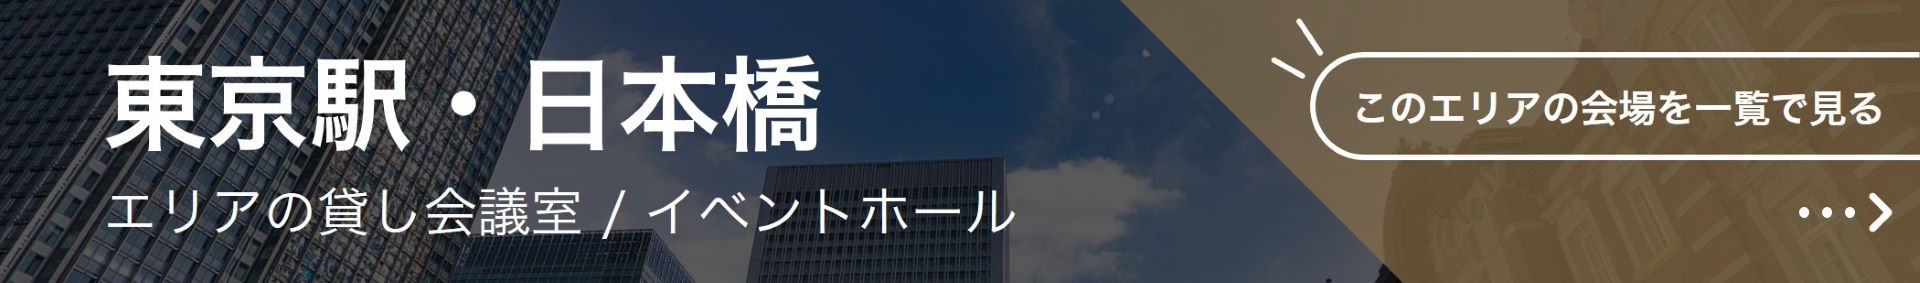 東京駅・日本橋エリアでWEB会議・オンライン会議ができる貸し会議室